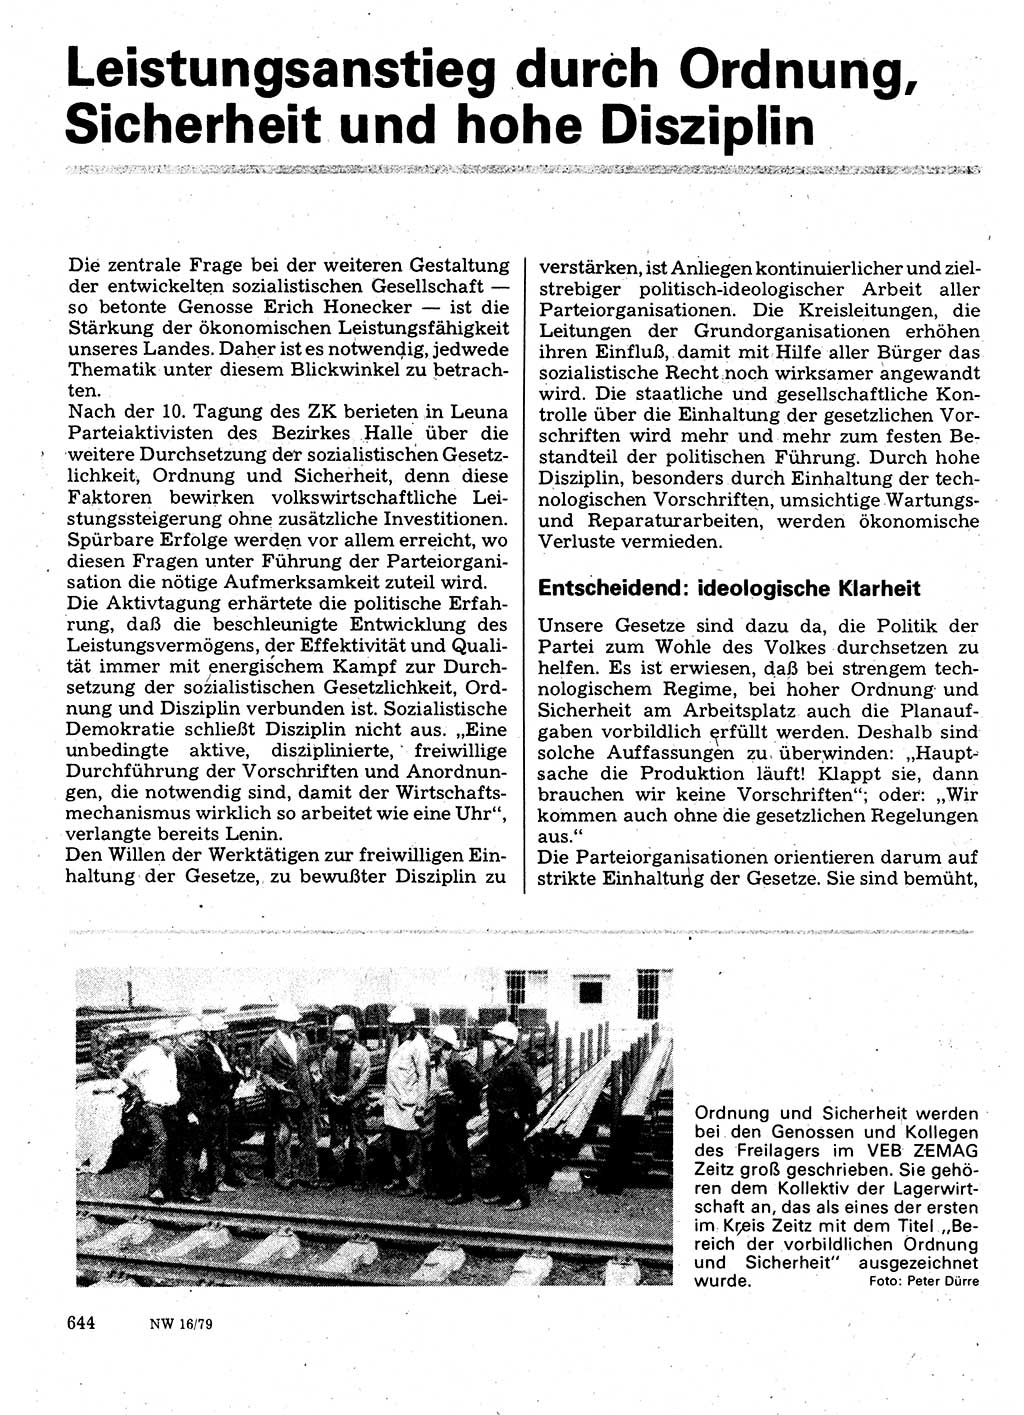 Neuer Weg (NW), Organ des Zentralkomitees (ZK) der SED (Sozialistische Einheitspartei Deutschlands) für Fragen des Parteilebens, 34. Jahrgang [Deutsche Demokratische Republik (DDR)] 1979, Seite 644 (NW ZK SED DDR 1979, S. 644)